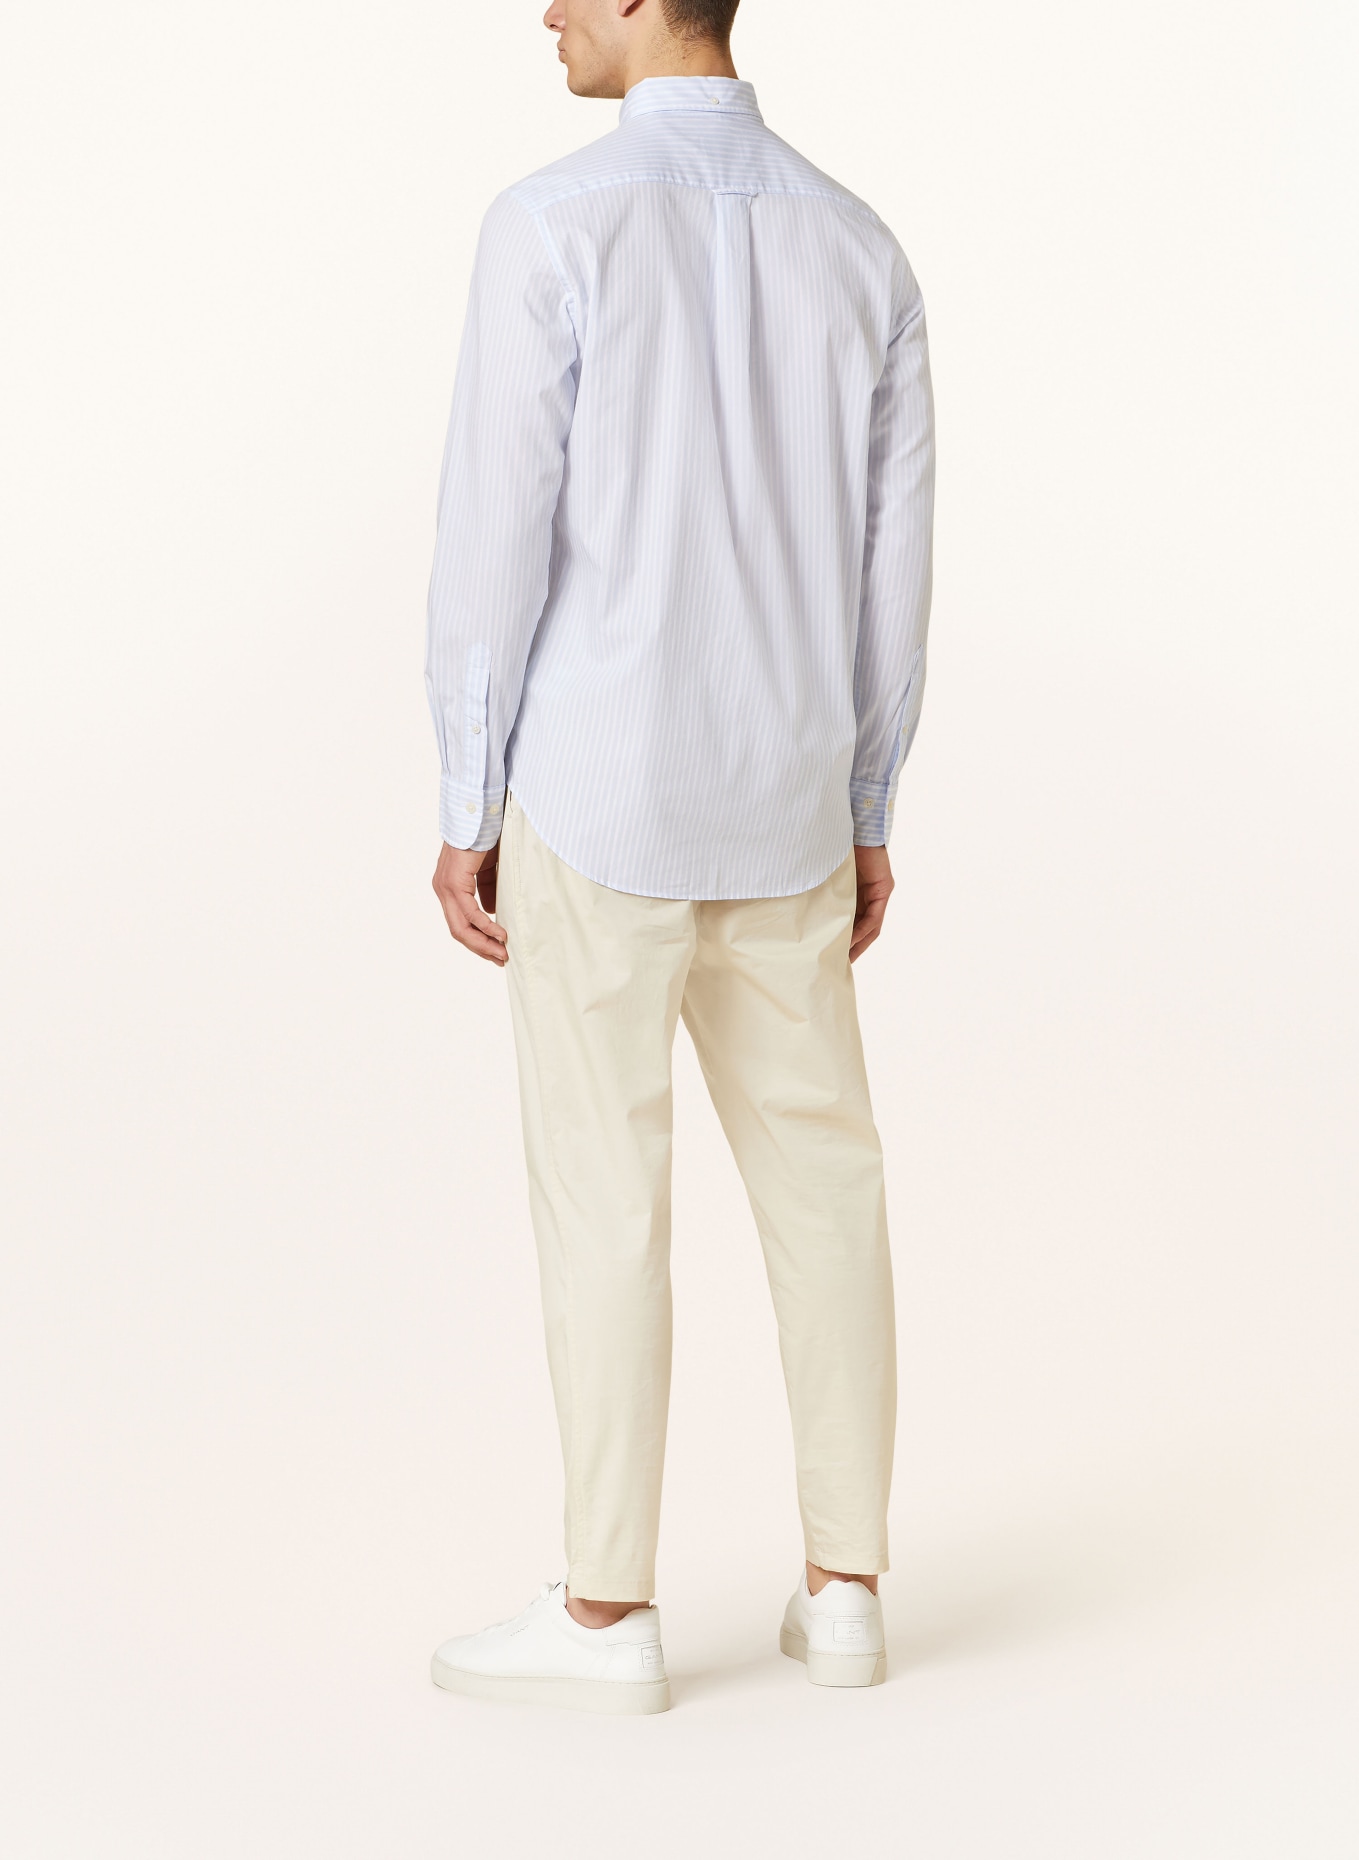 GANT Shirt regular fit, Color: LIGHT BLUE (Image 3)